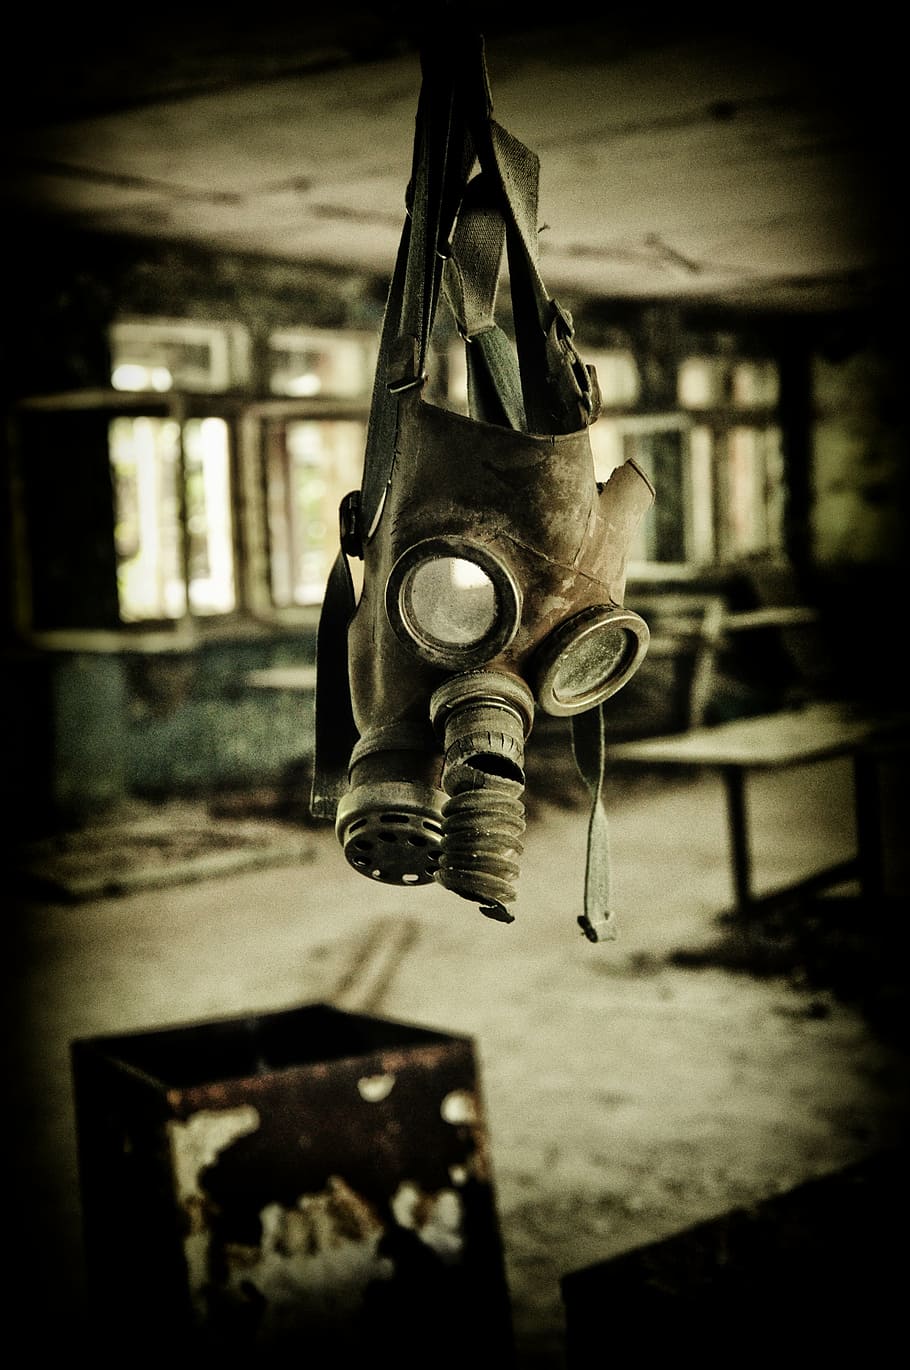 selektif, fokus, digantung, masker gas, pripyat, chernobyl, hitam dan putih, industri, kotor, fokus pada latar depan